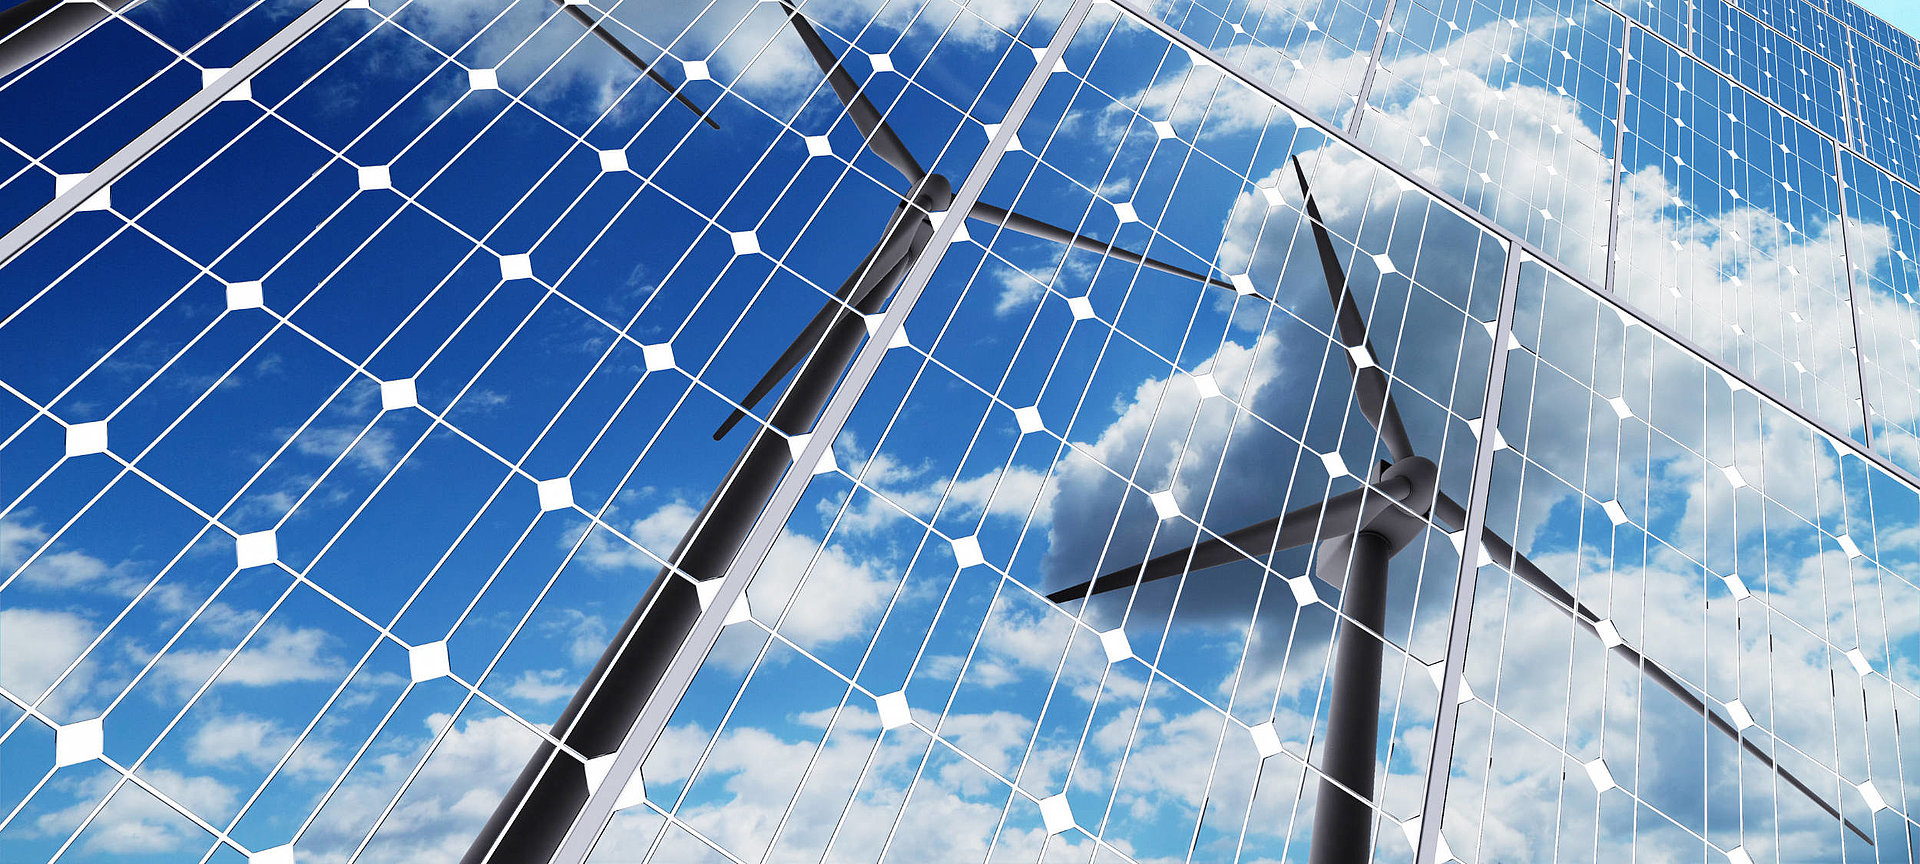 Das Bild ist das Übersichtsbild des Ausbildungsbereichs Umwelt und Technik. Es zeigt viele Solarzellen, in denen sich zwei Windräder und der Himmel spiegeln.